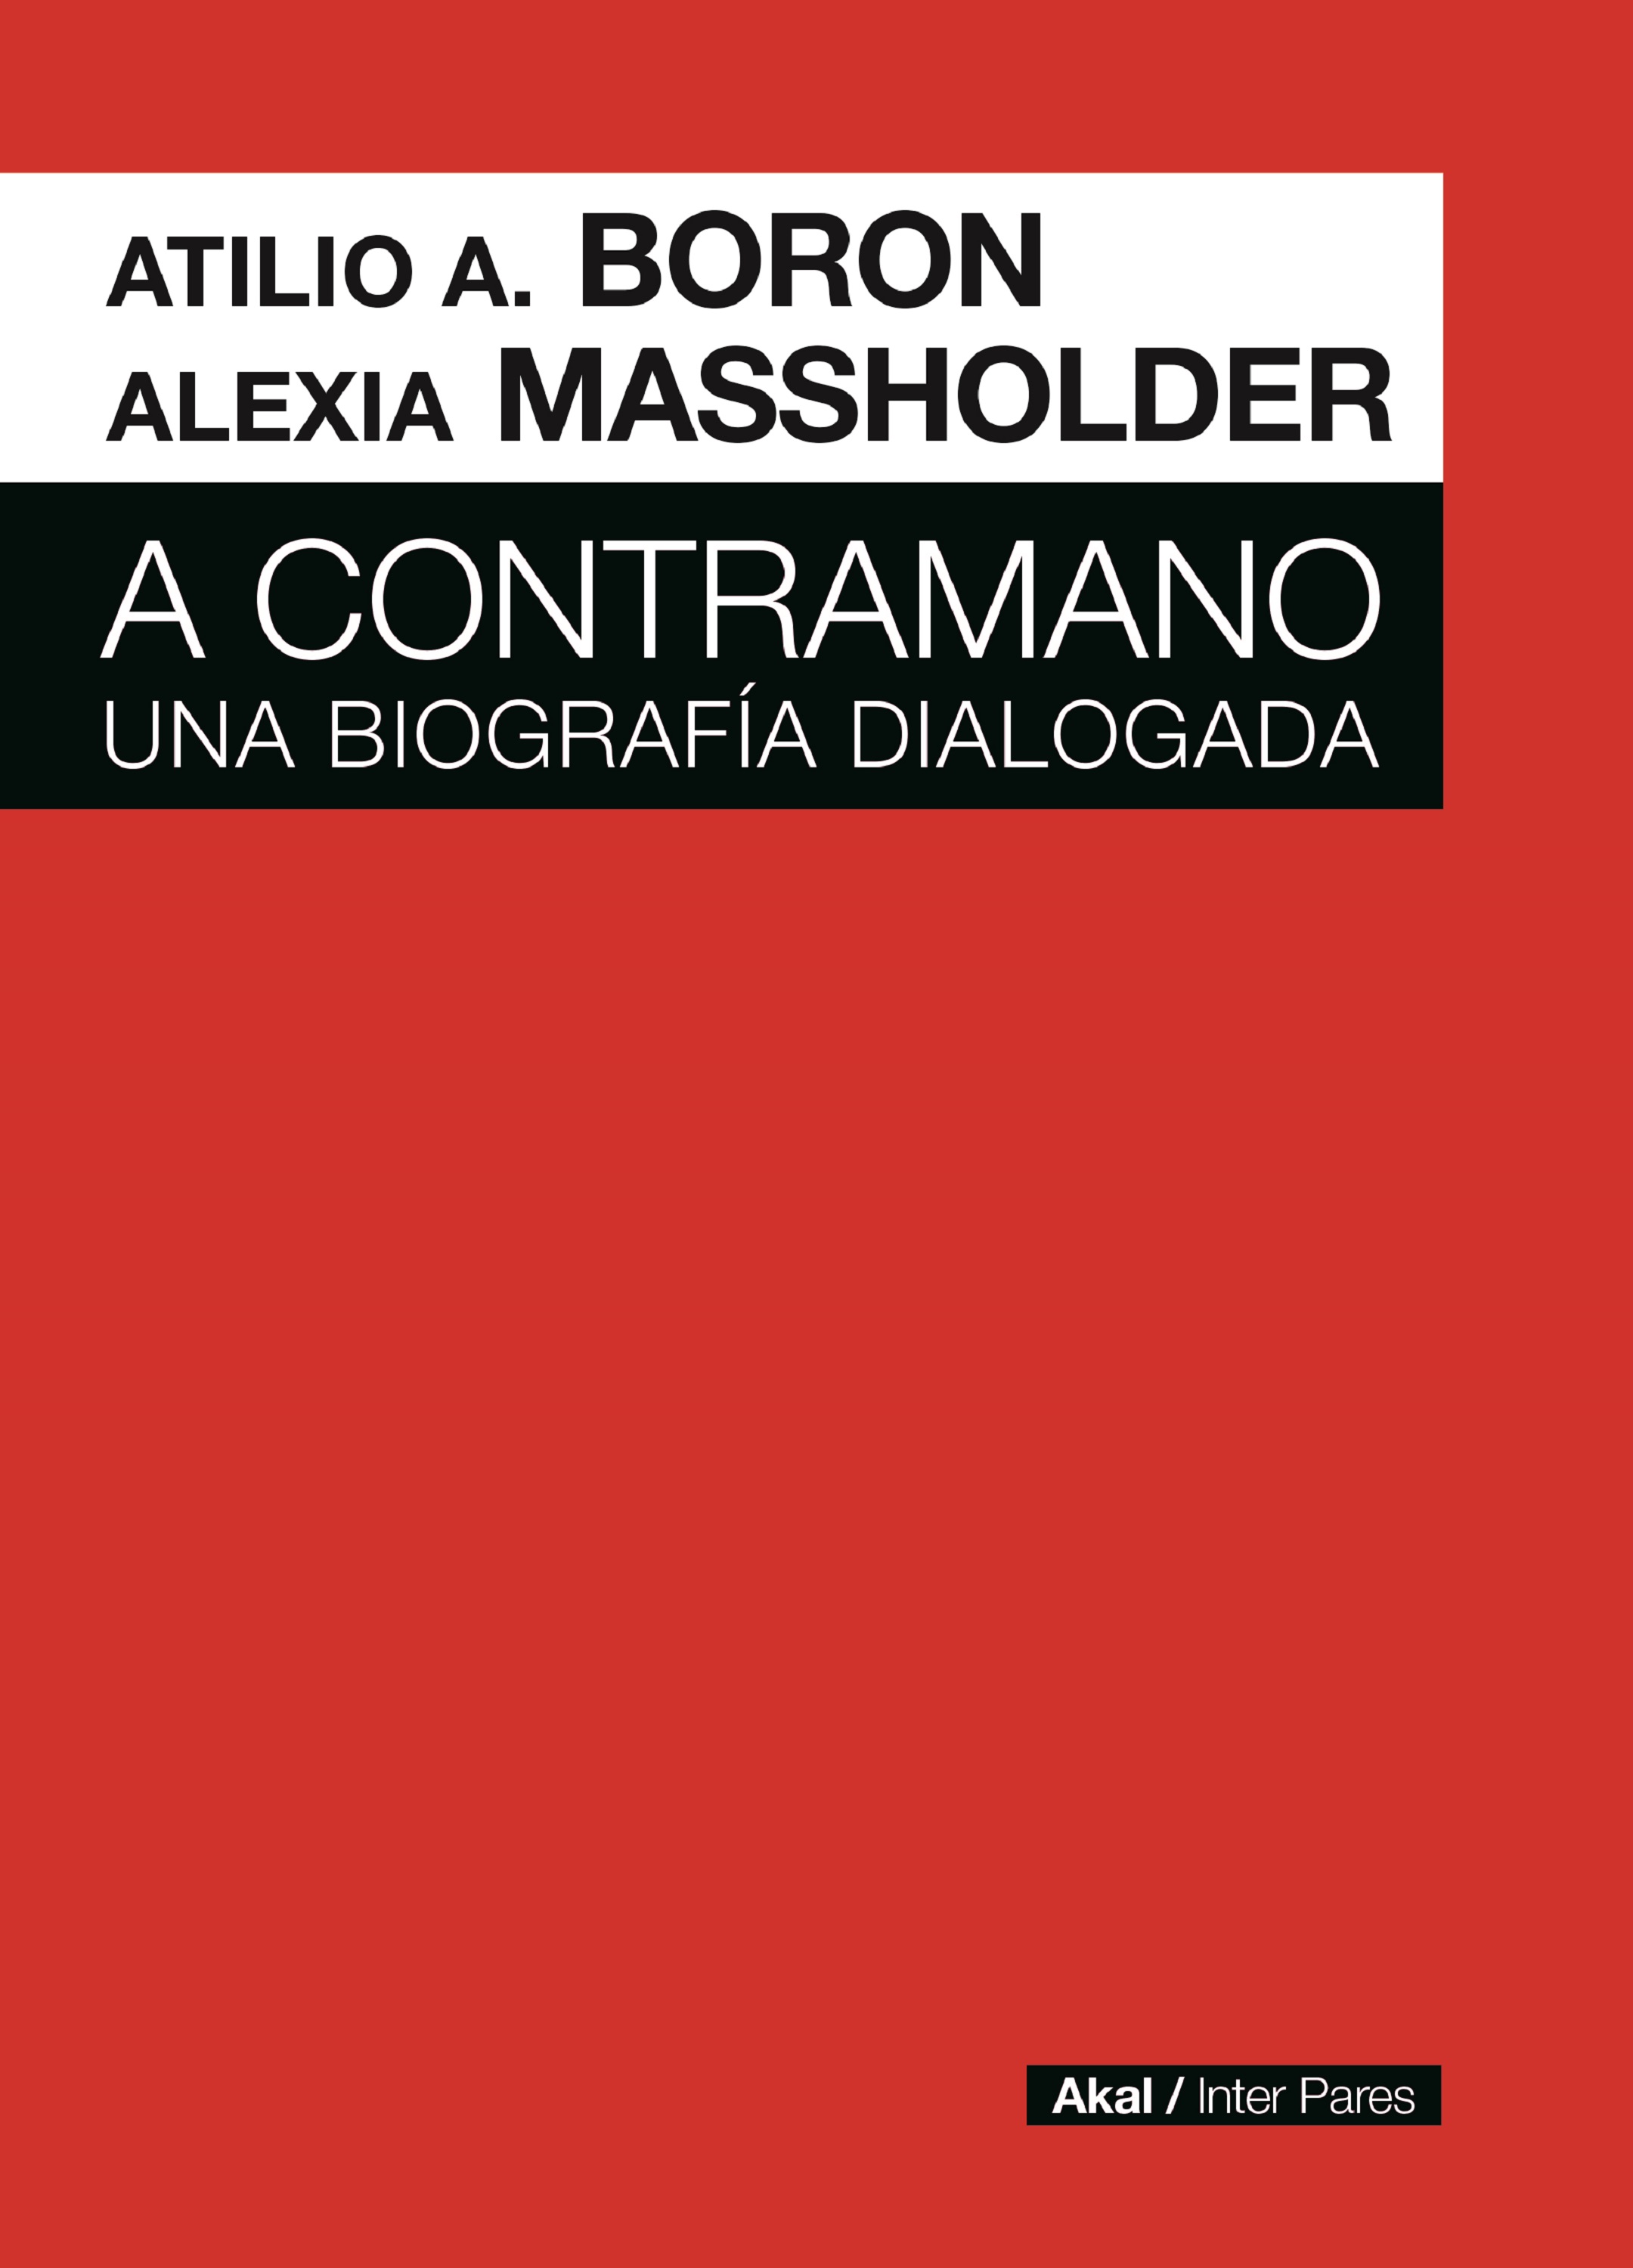 A CONTRAMANO - Atilio A. Boron | Alexia Guillermina Massholder